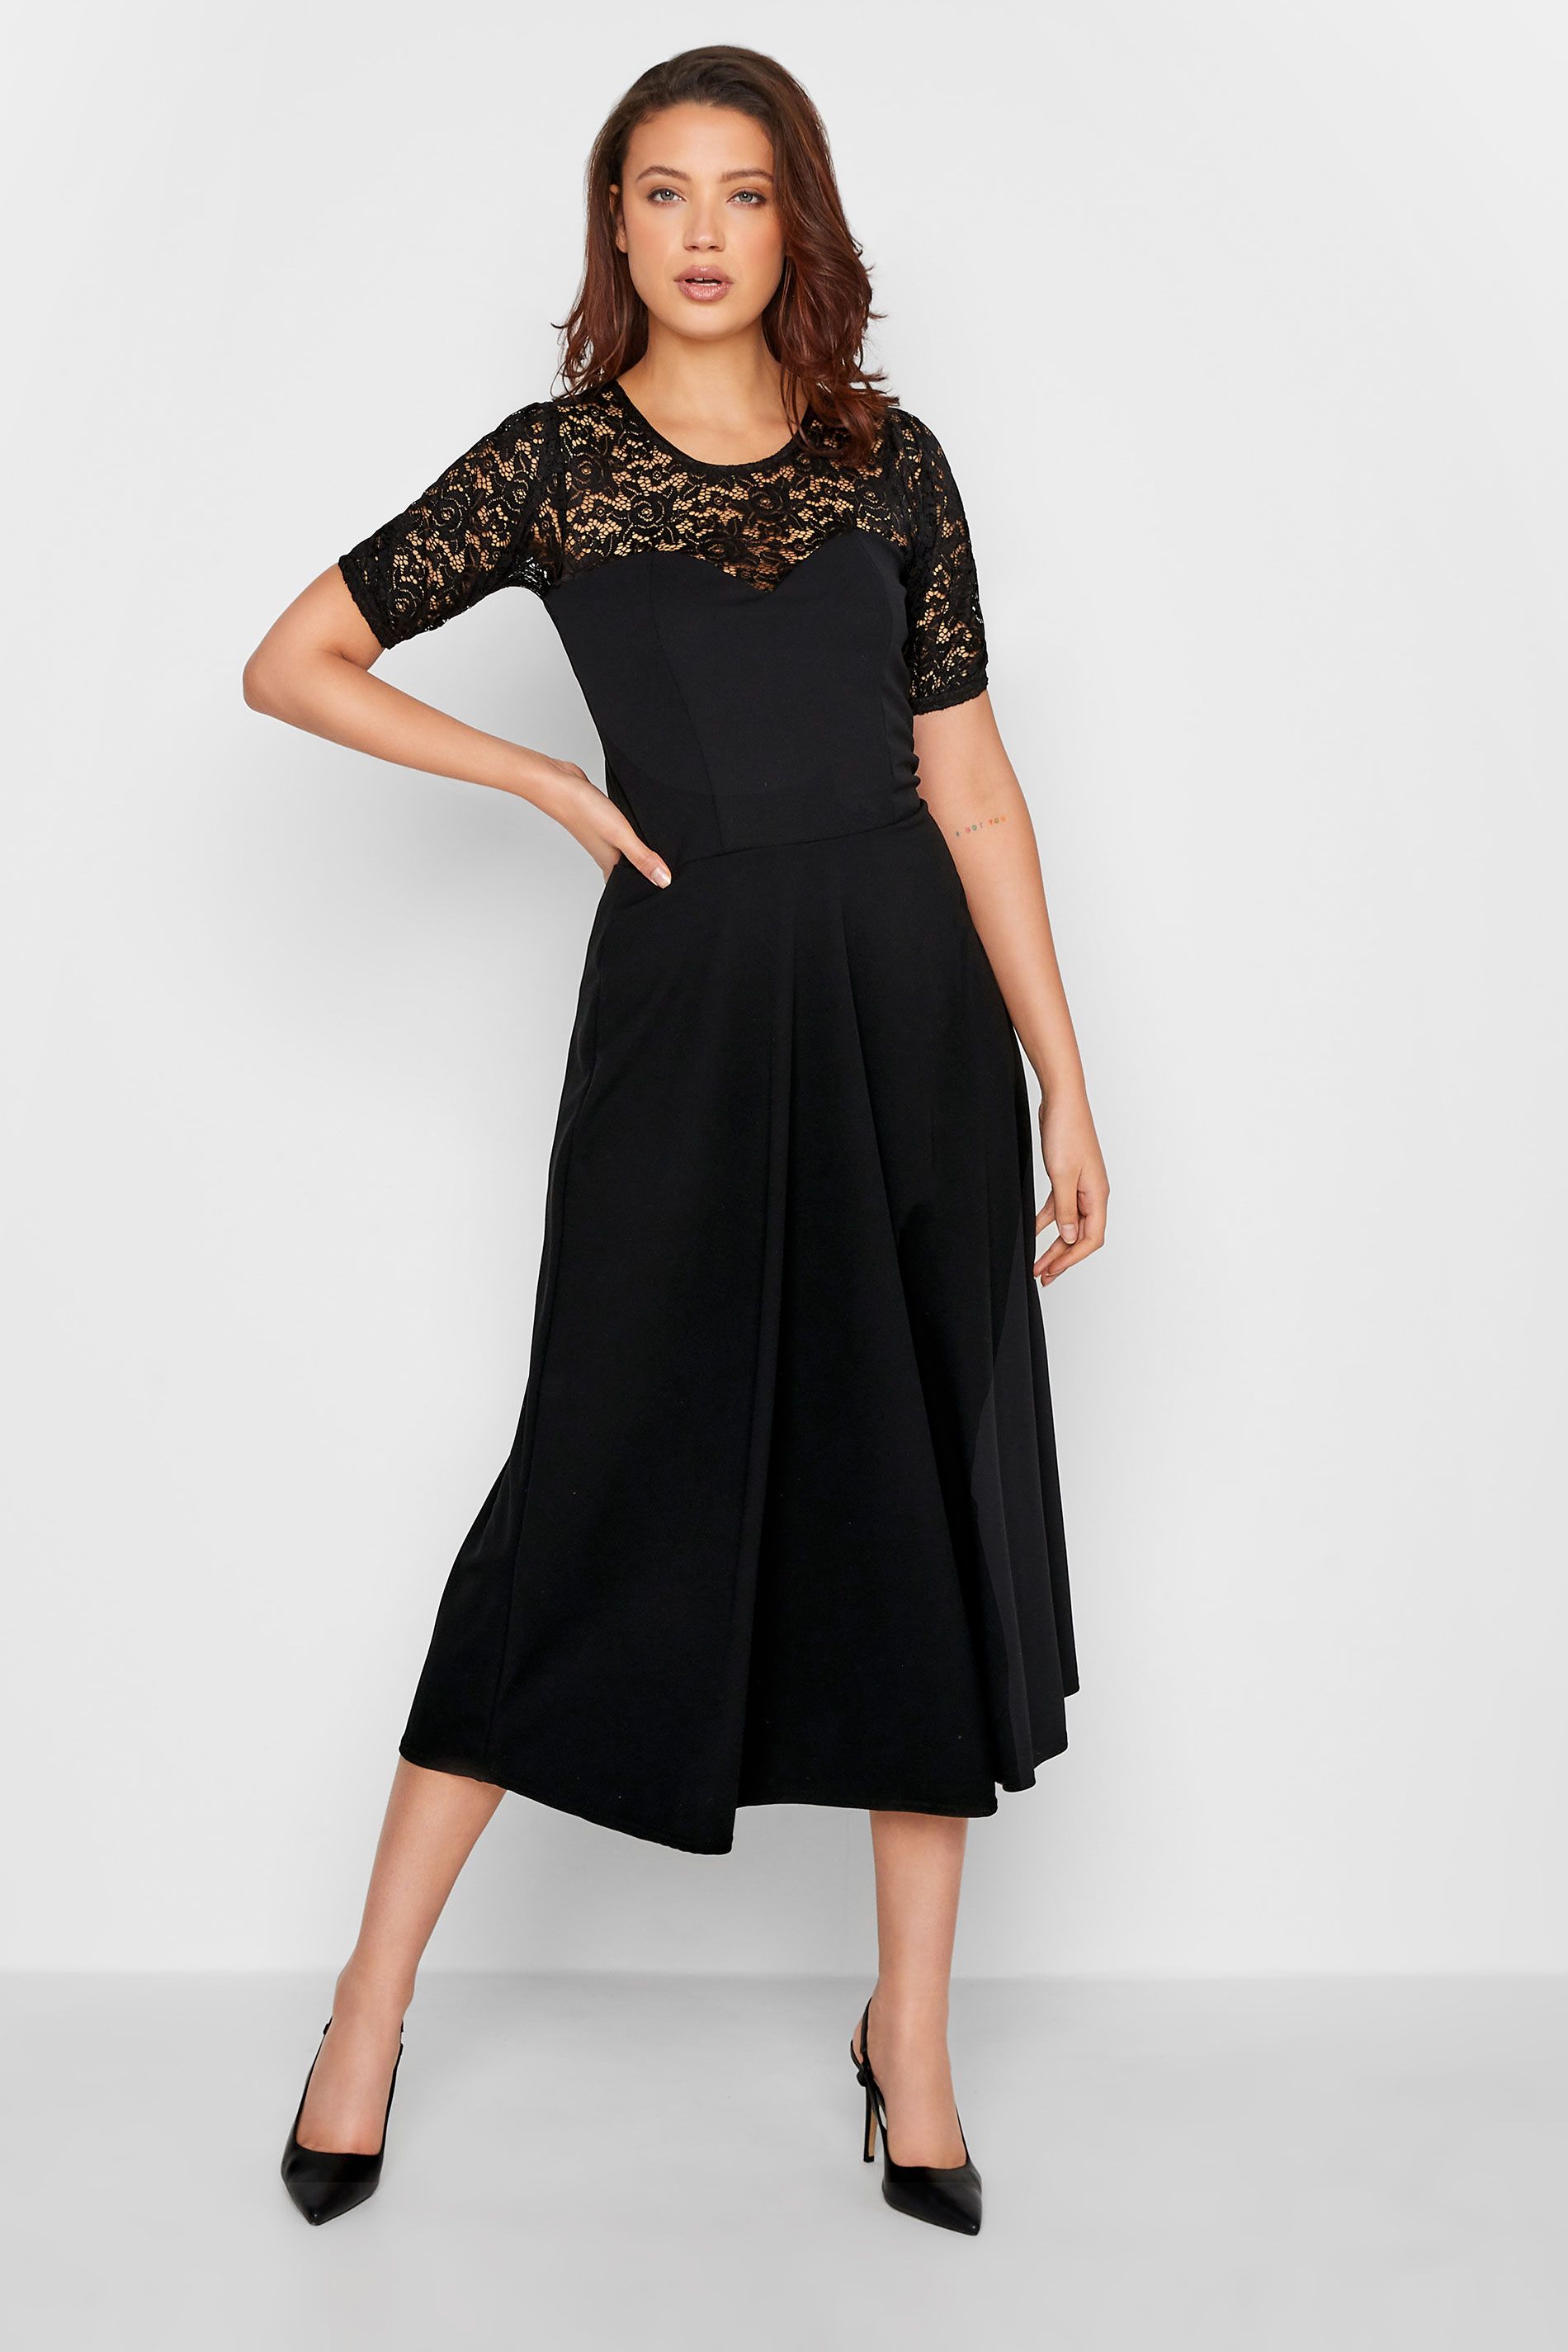 LTS Tall Black Lace Midi Dress | Long Tall Sally